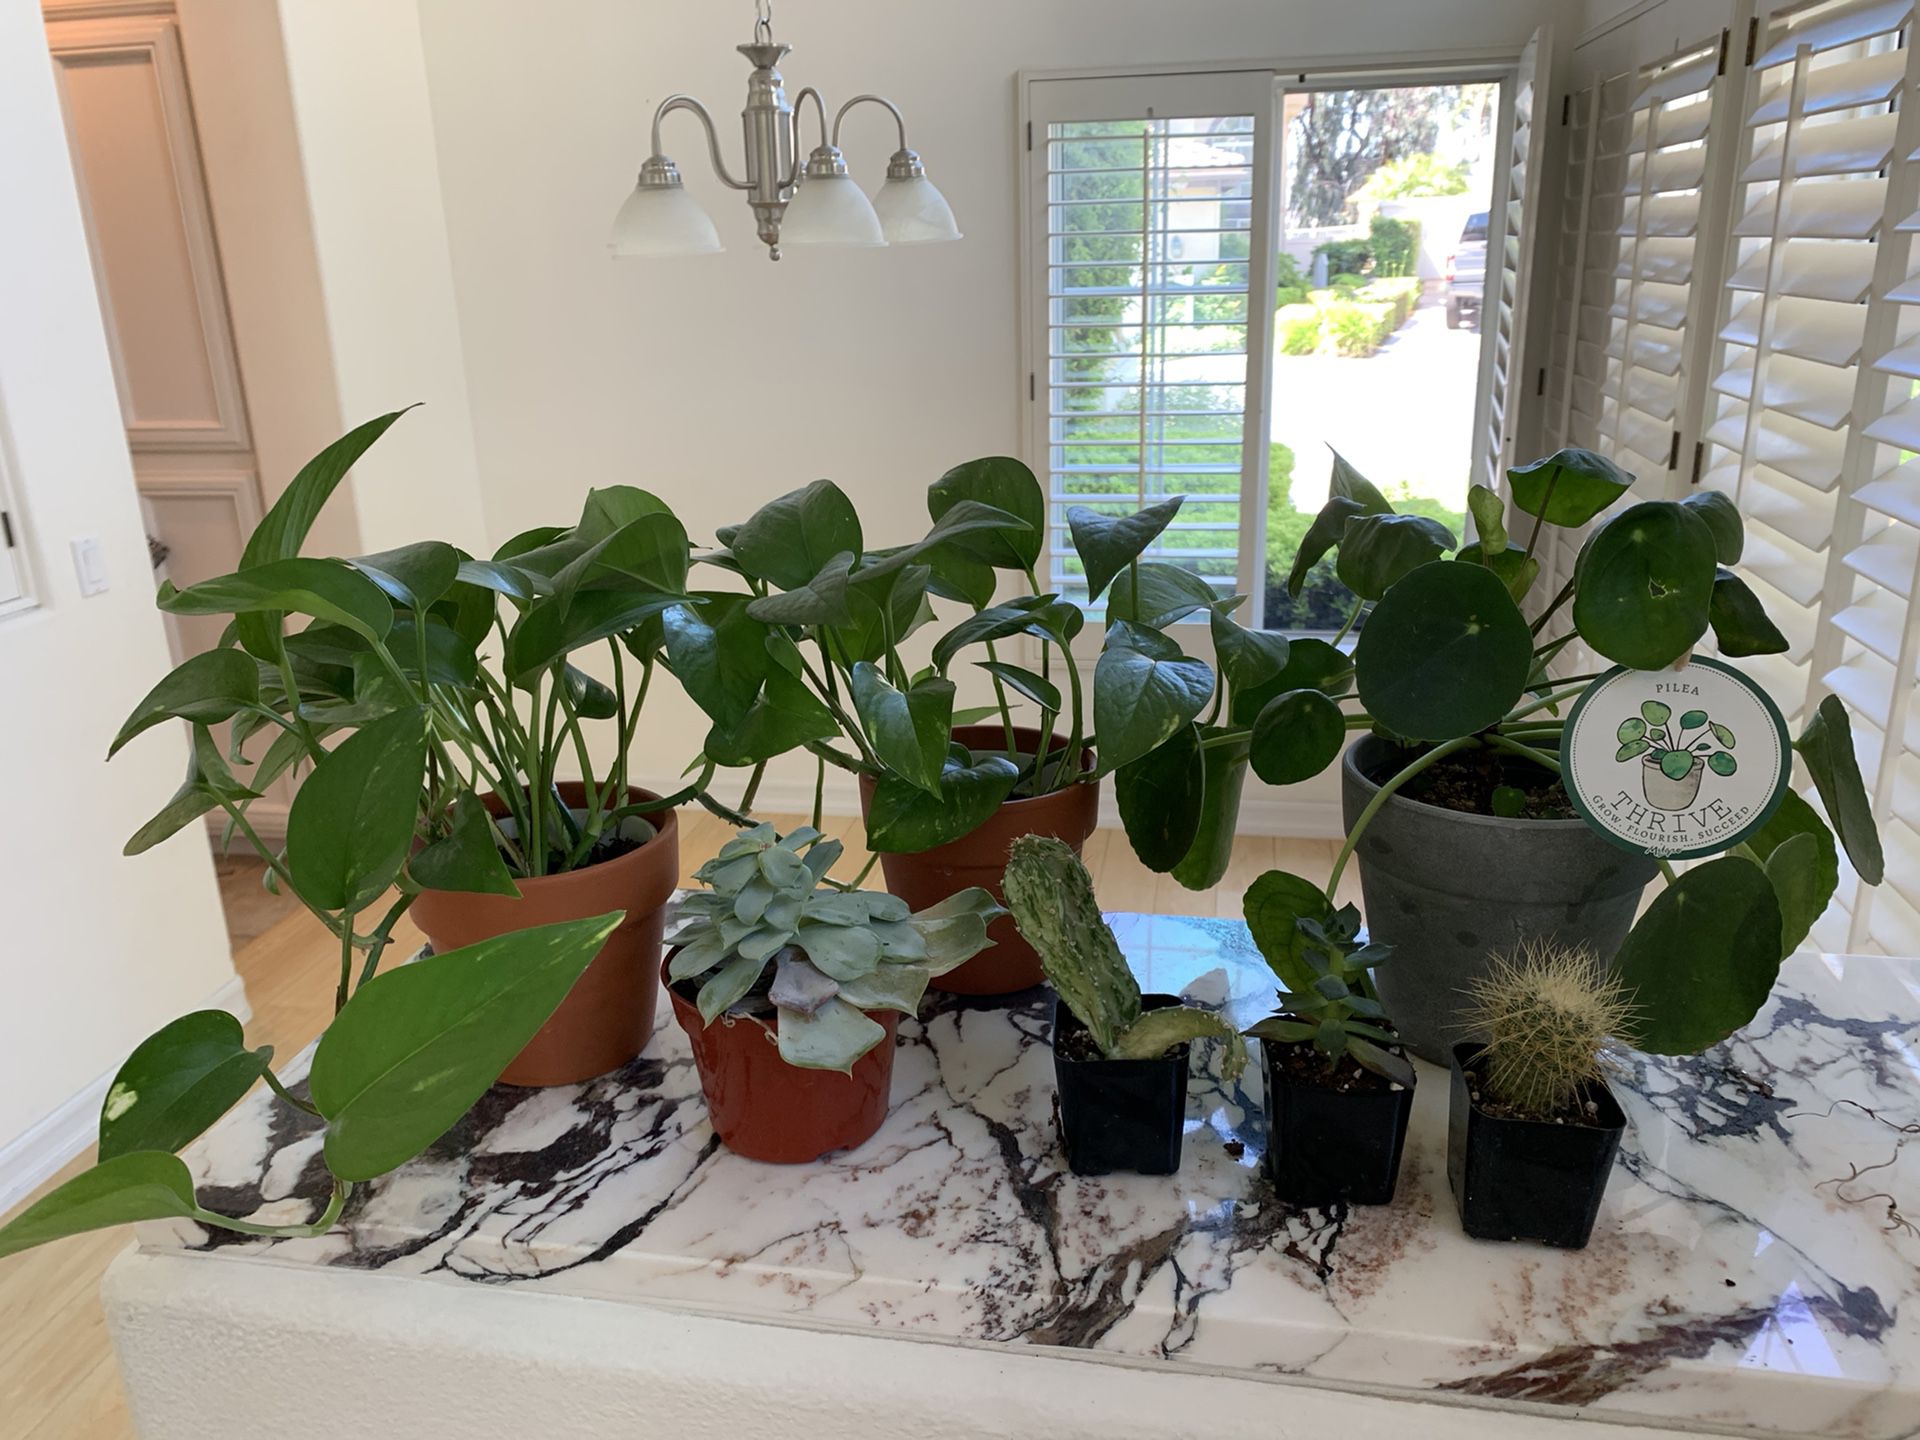 3 Plants & 4 cacti